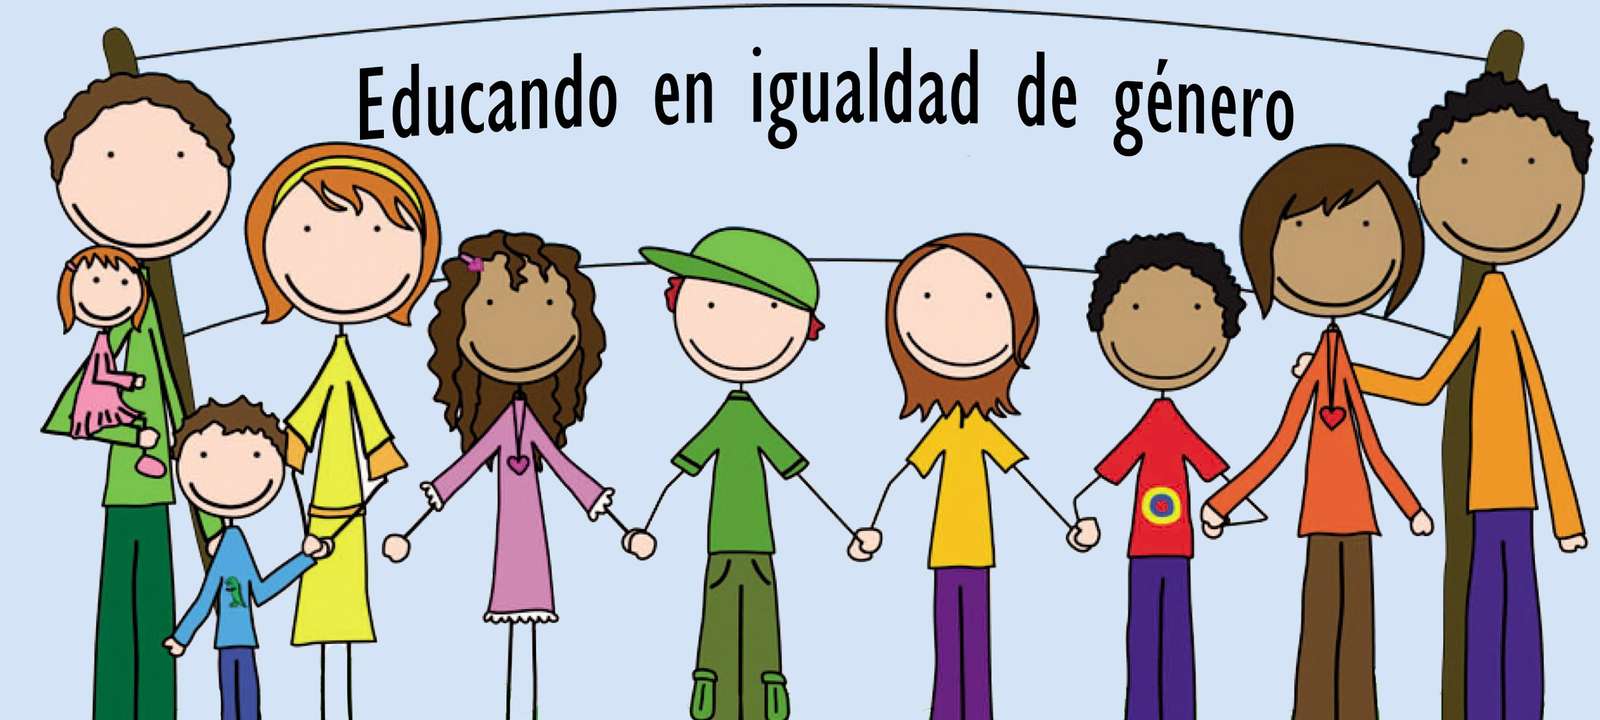 Educando en igualdad de género puzzle online from photo